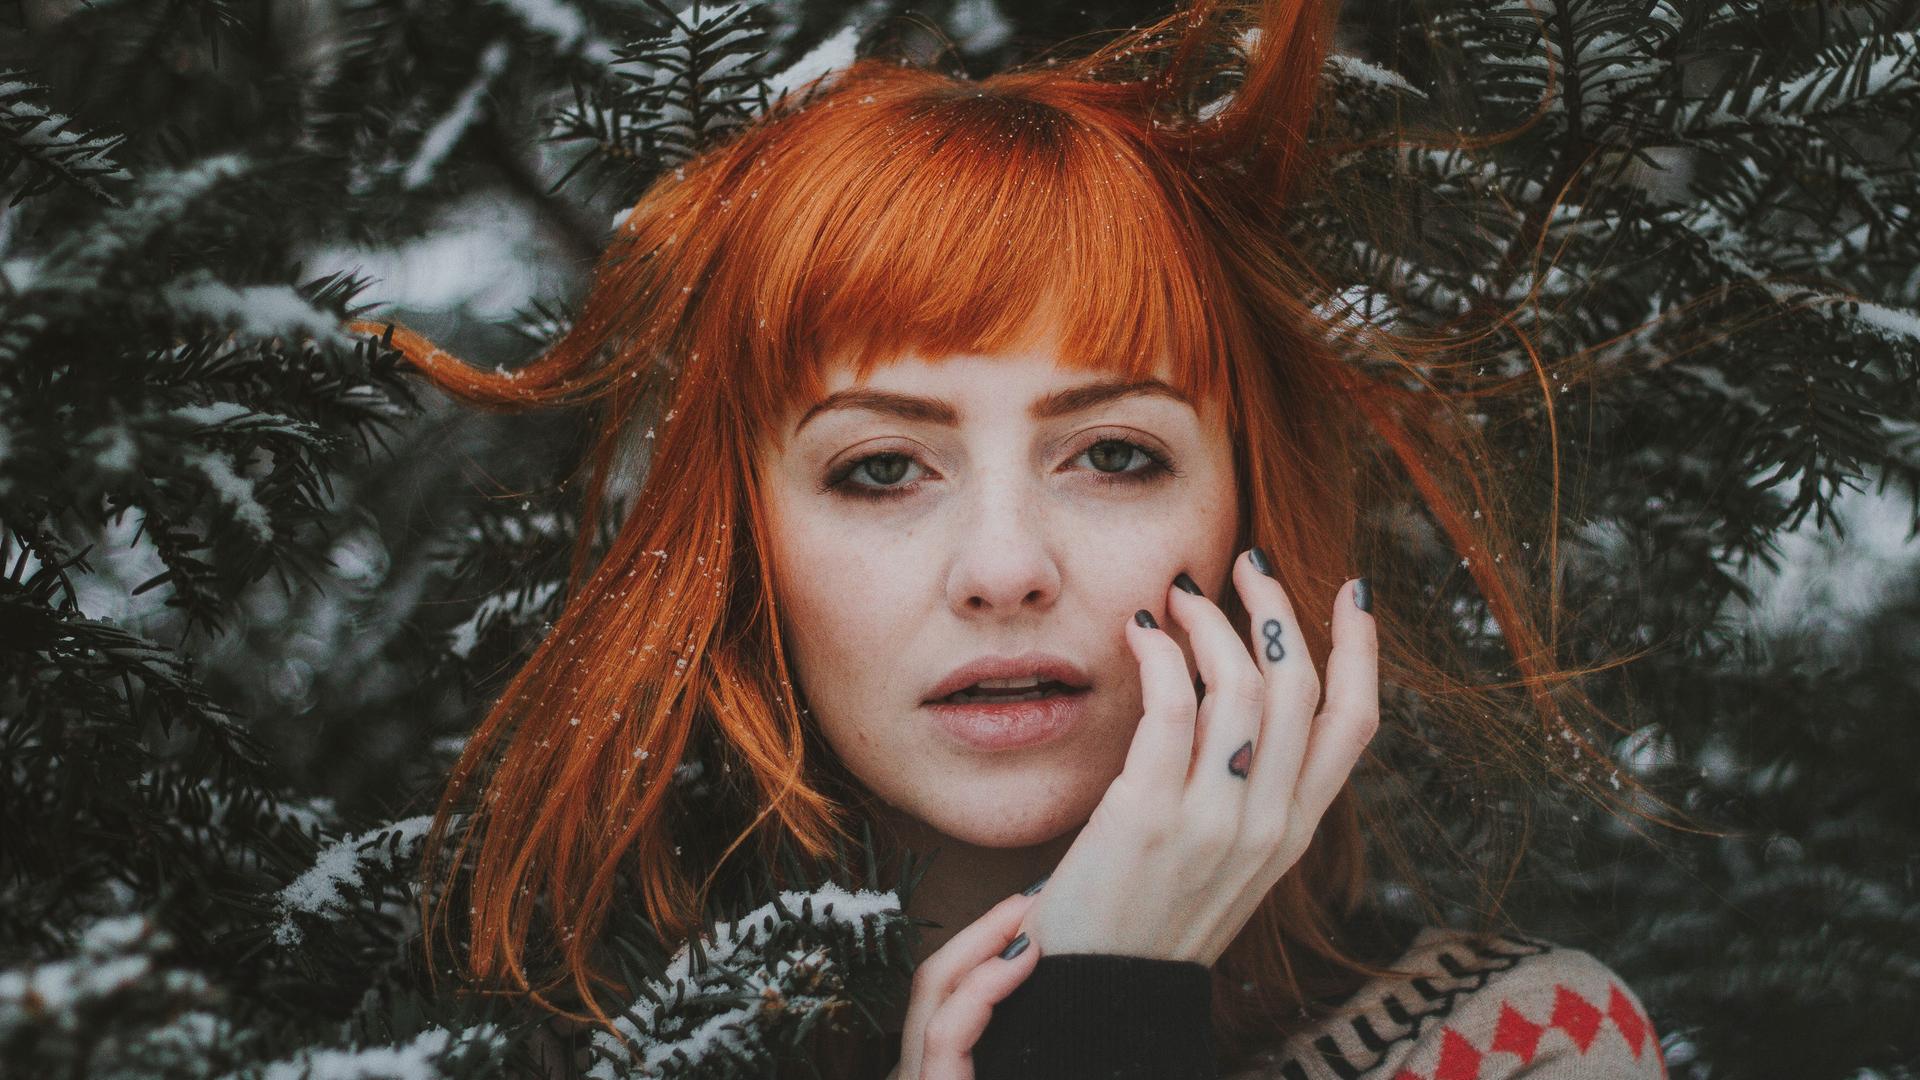 Das Gesicht einer jungen, rothaarigen Frau ist von verschneiten Tannenzweigen umgeben.